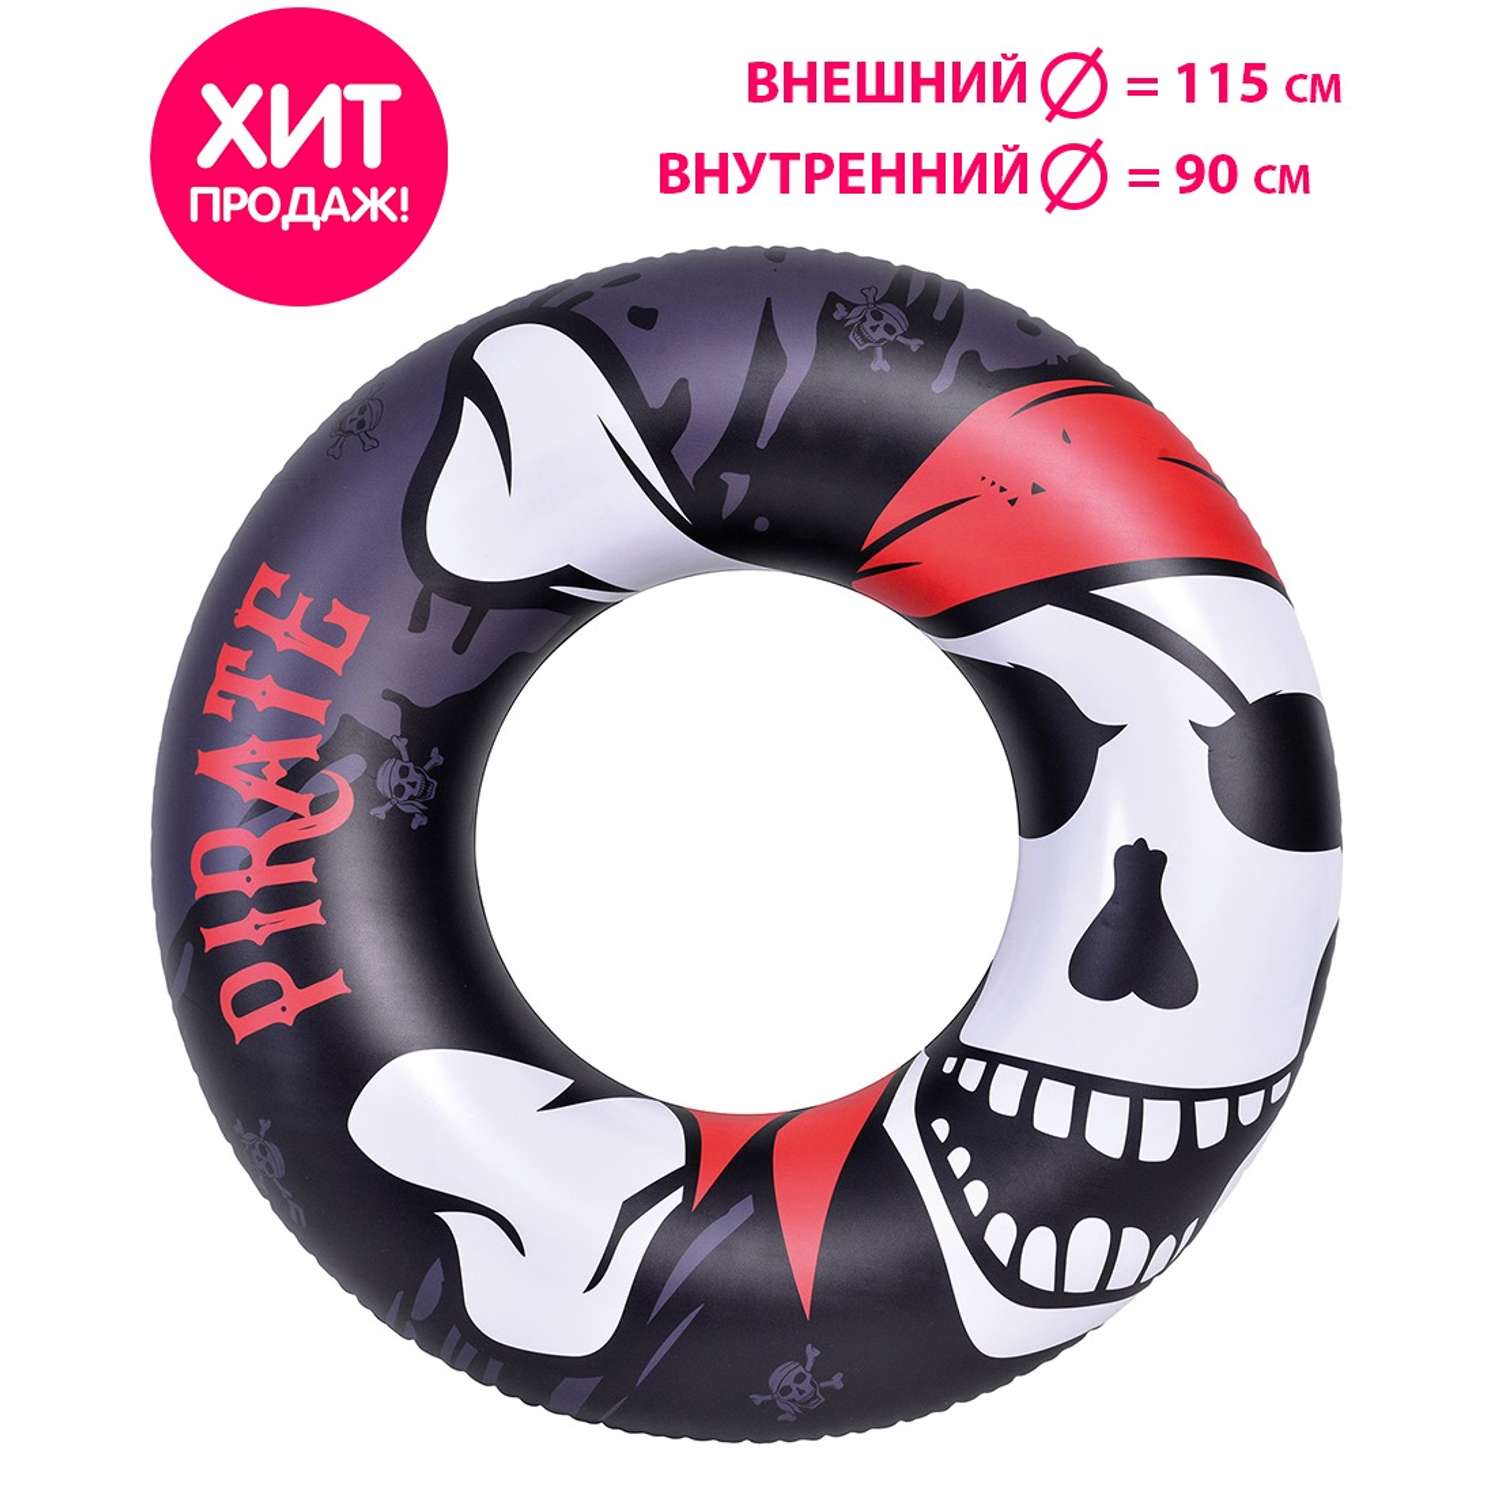 Надувной круг для плавания Jilong Пиратский стиль 115 см - фото 2